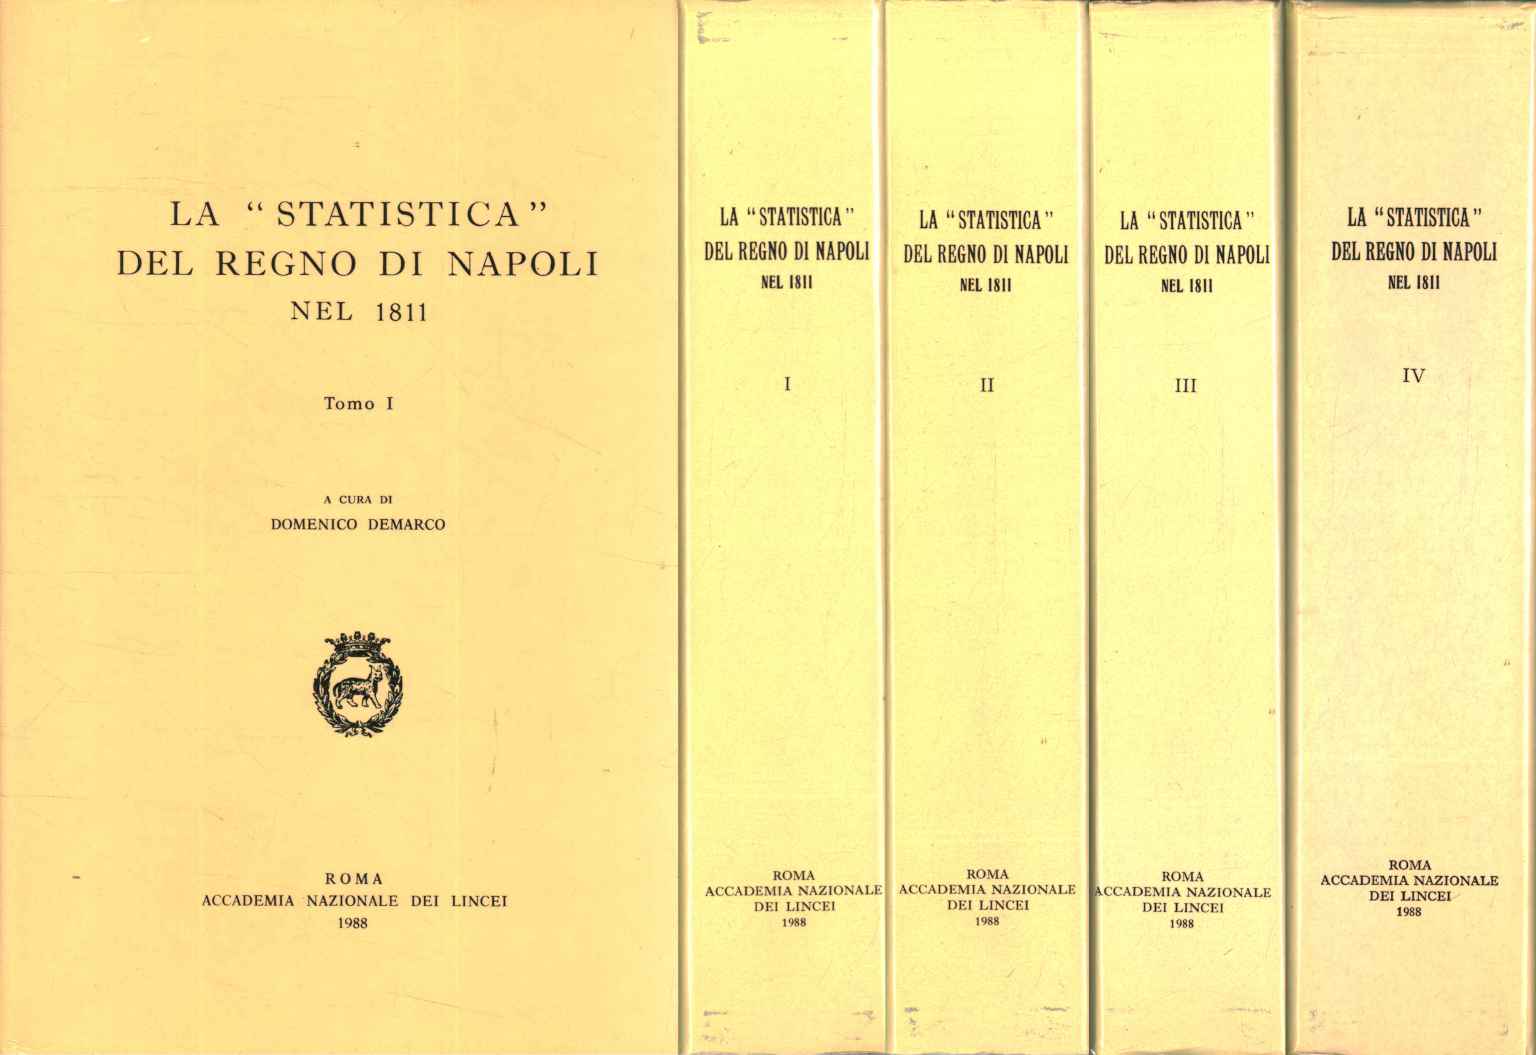 Las estadísticas del Reino de Nápoles en%,Las estadísticas del Reino de Nápoles en%,Las estadísticas del Reino de Nápoles en%